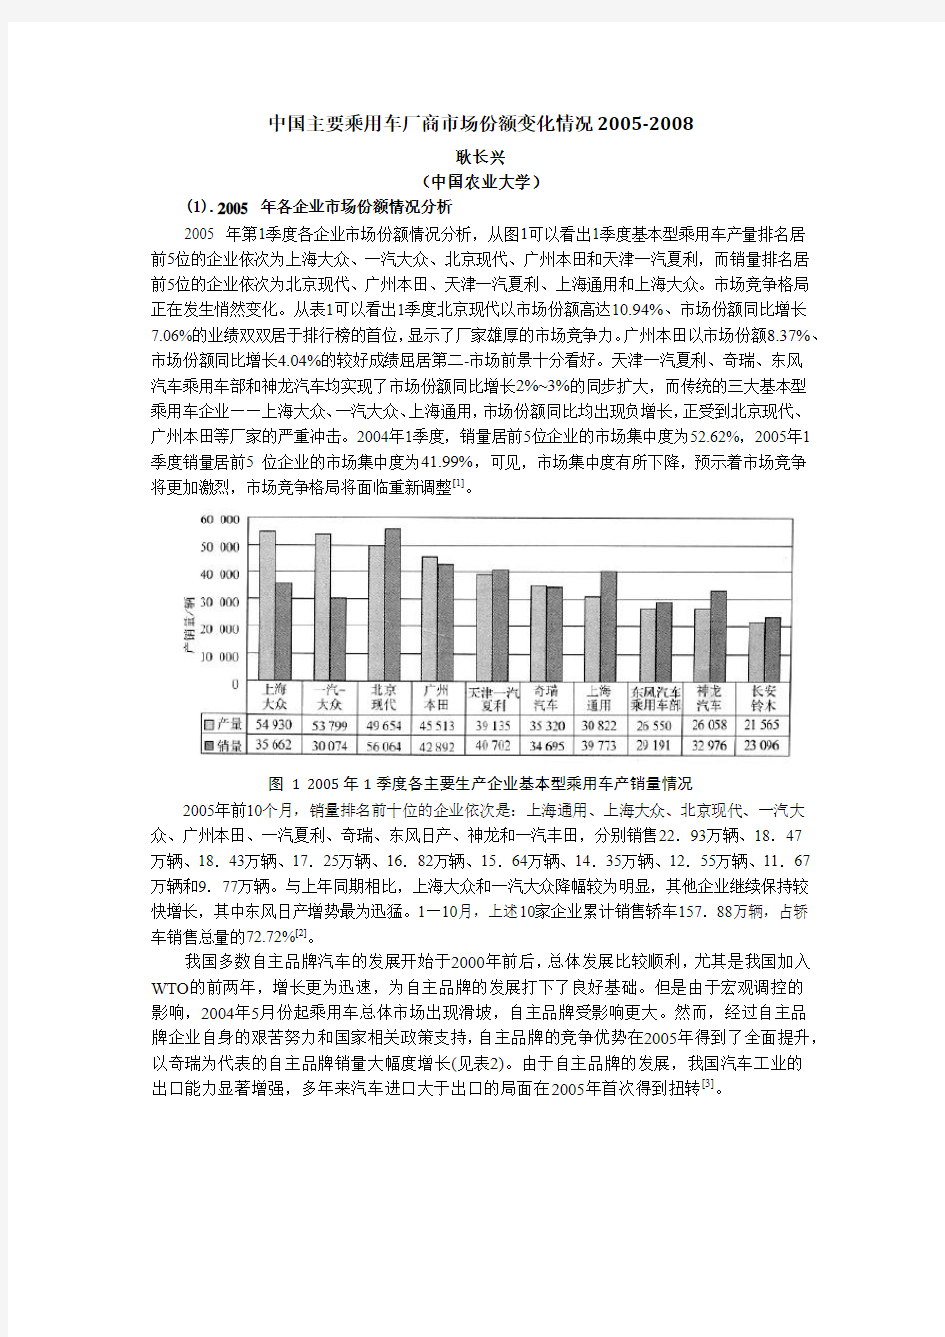 中国主要乘用车厂商市场份额变化情况2005~2008